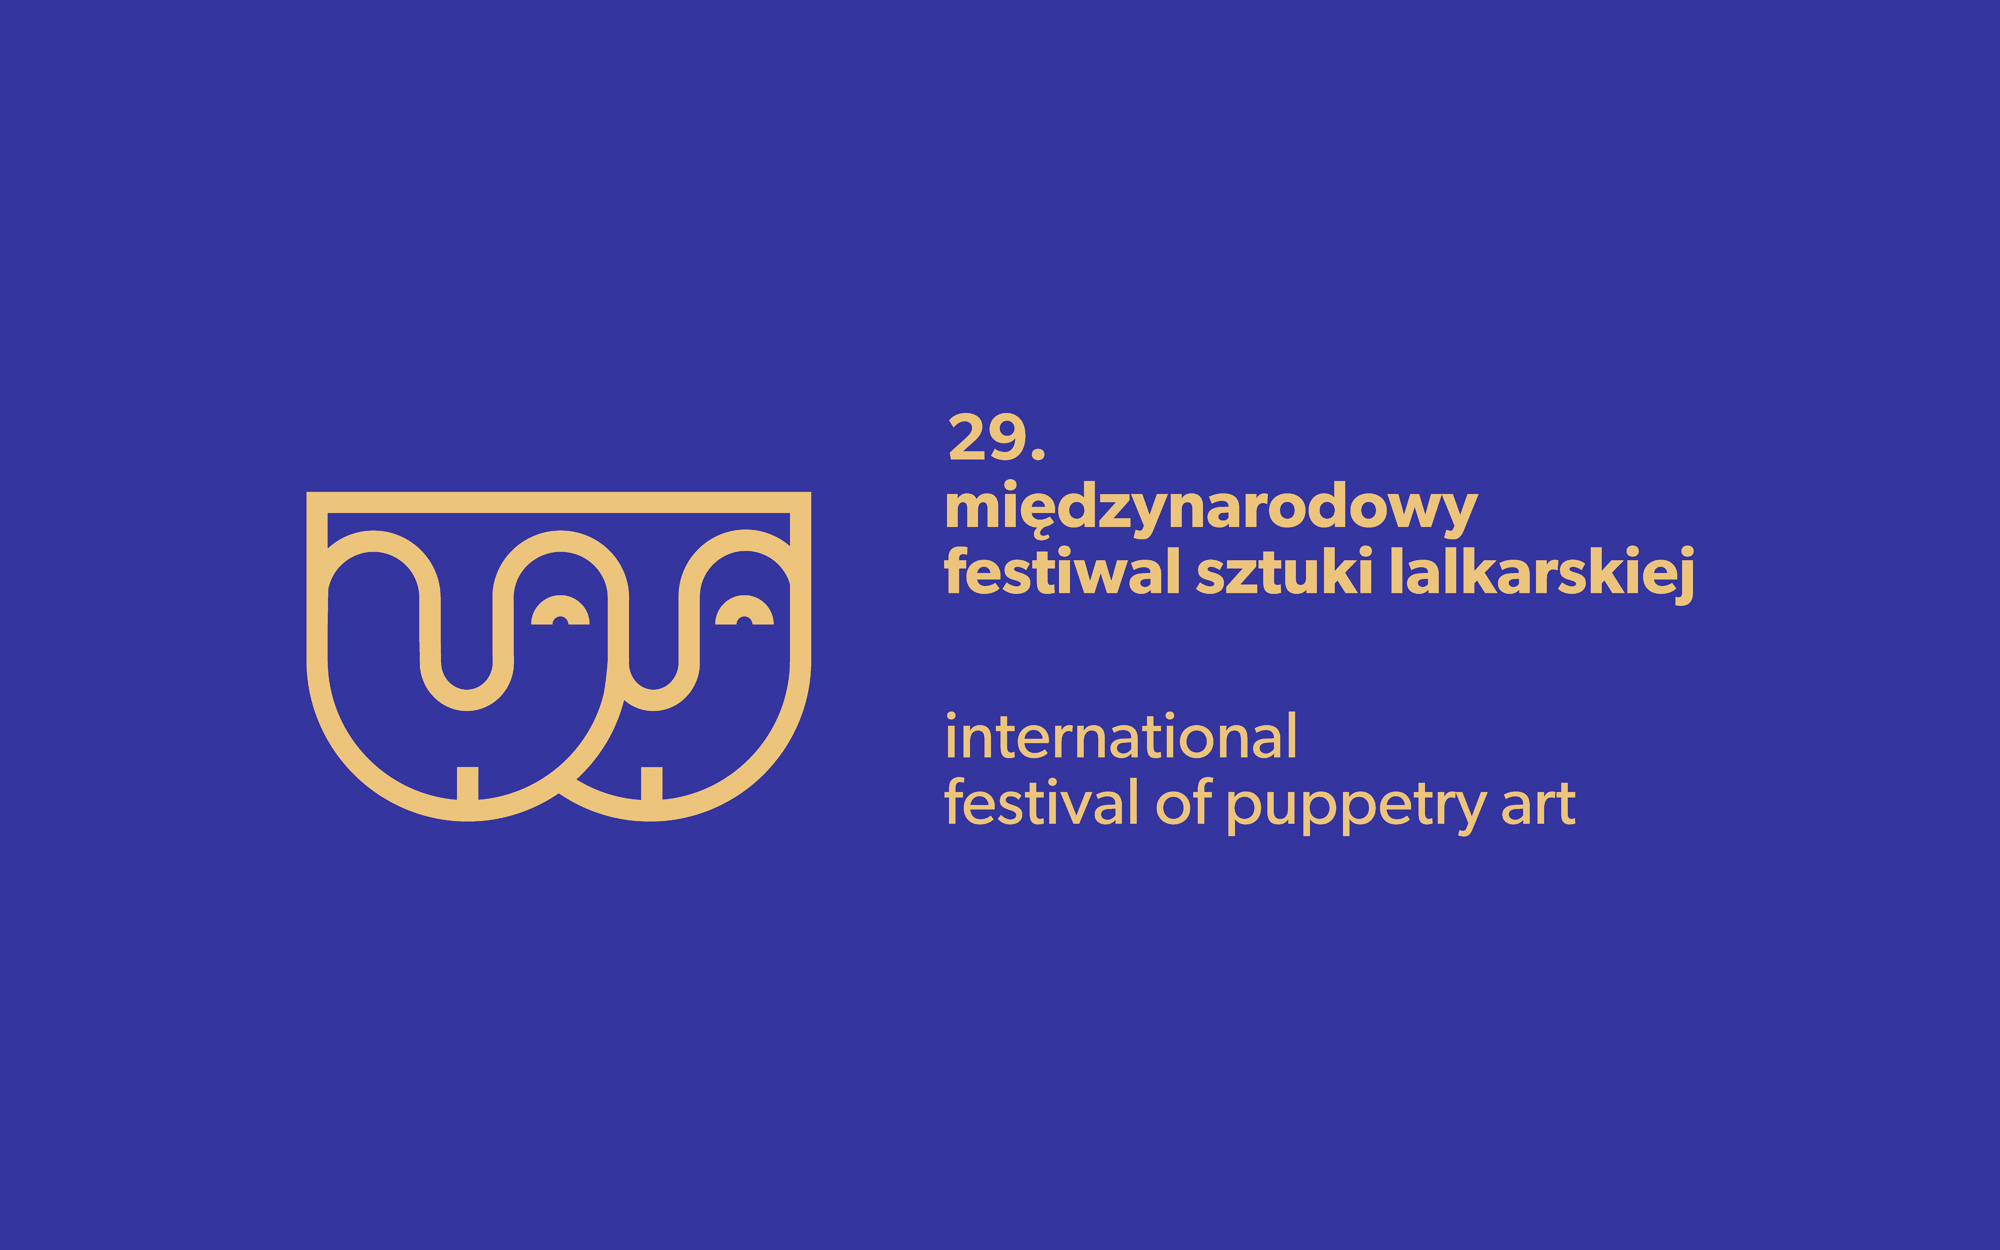  29. Międzynarodowy Festiwal Sztuki Lalkarskiej Na zdjęciu logo festiwalu